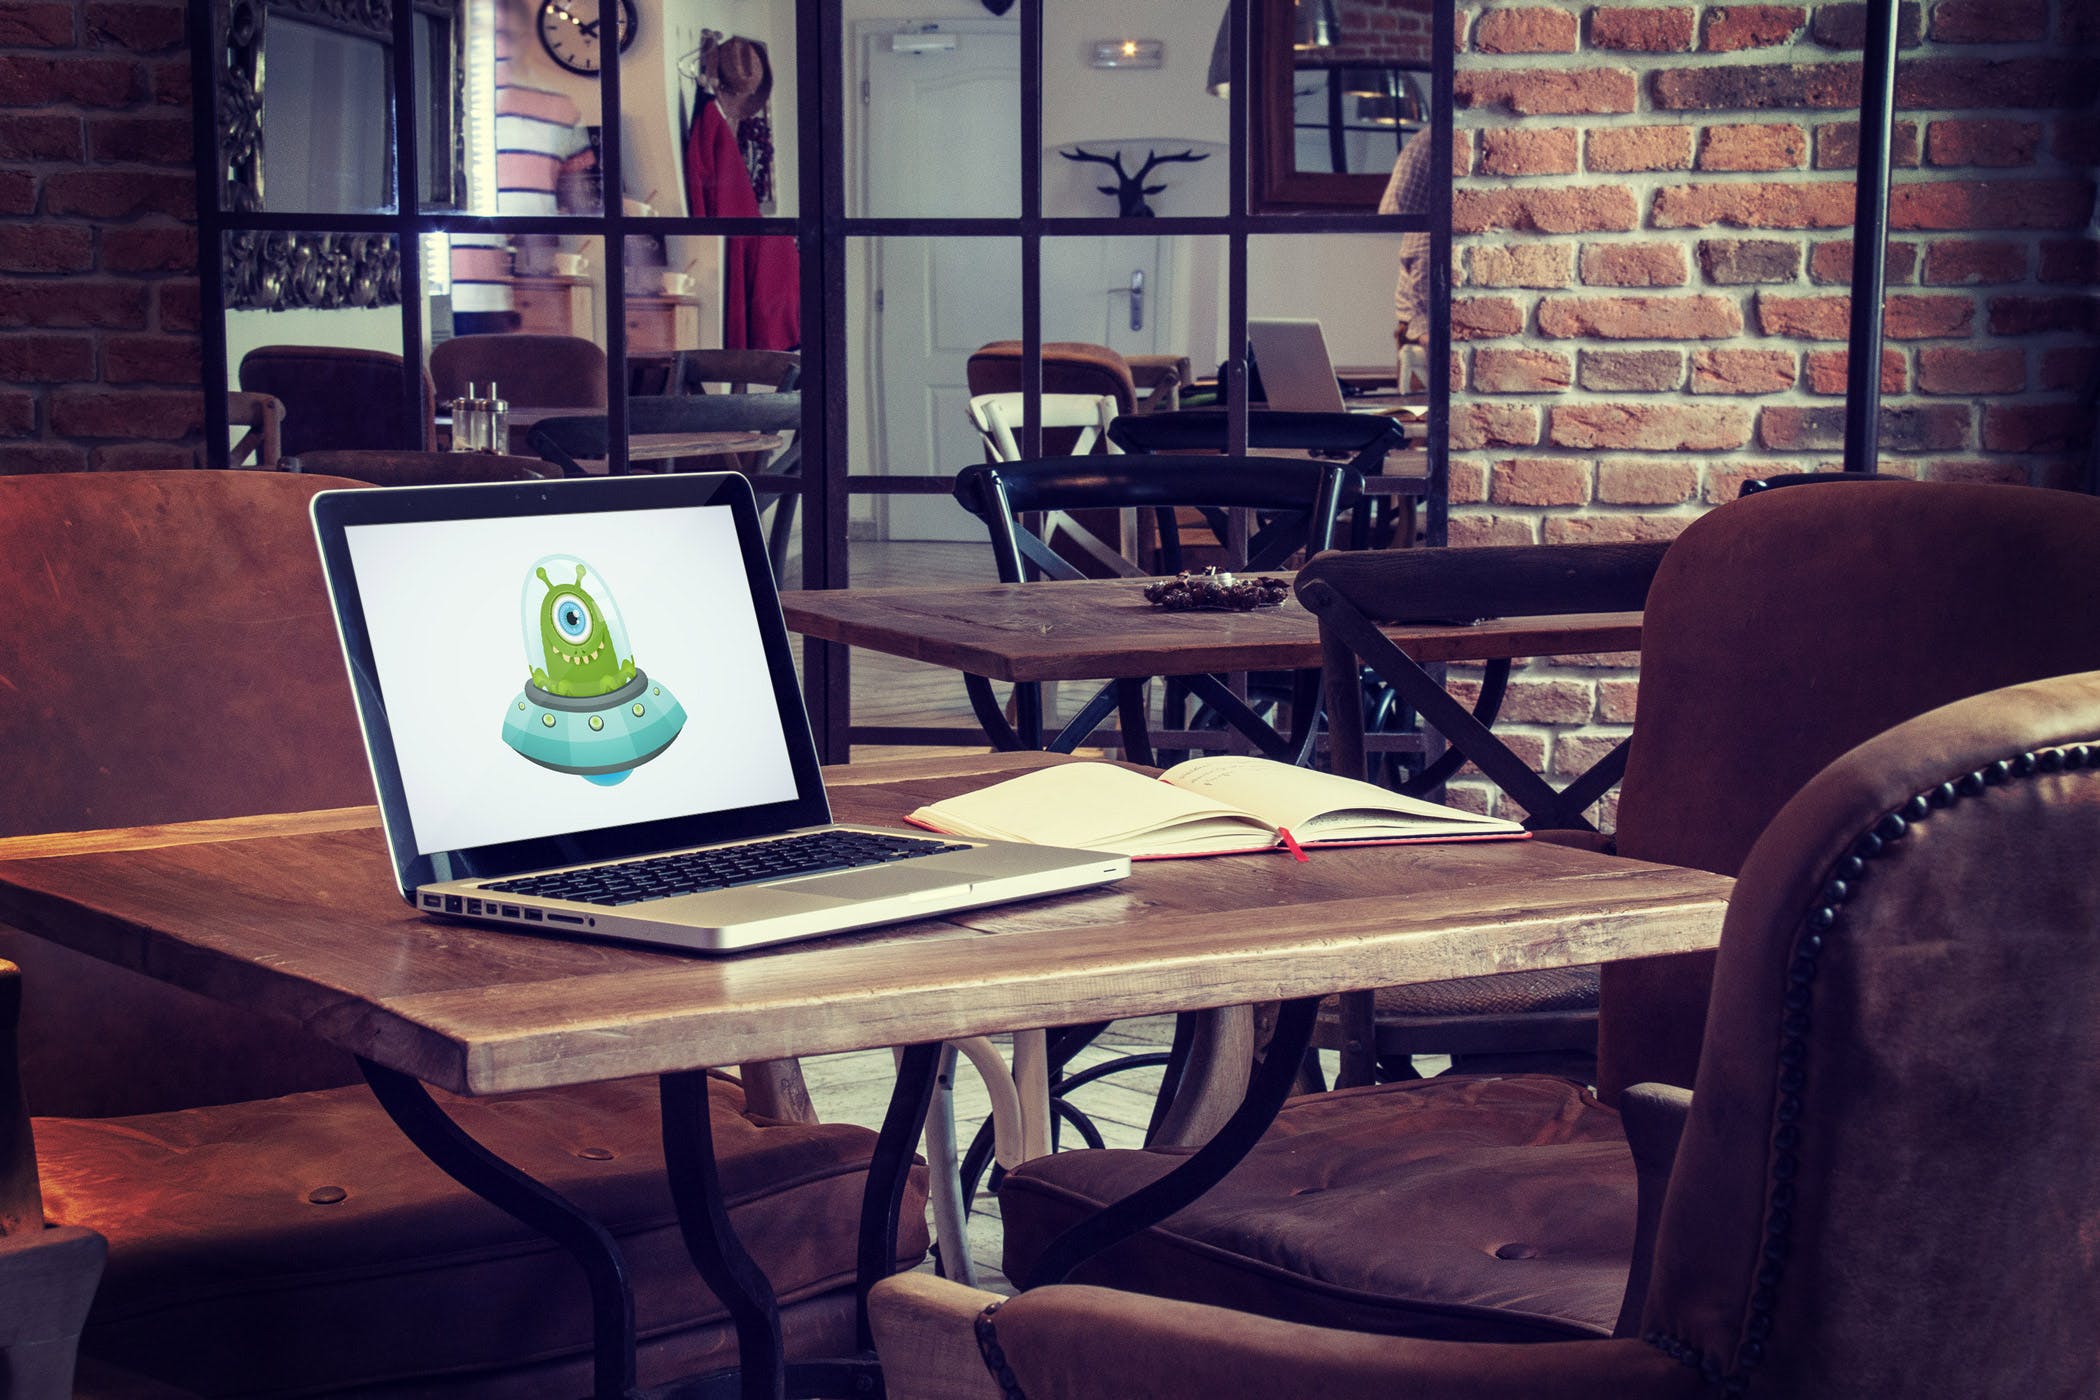 咖啡店场景MacBook&iPad屏幕预览第一素材精选样机模板v4 5 Laptop and tablet mock-ups in cafe Vol. 4插图(3)